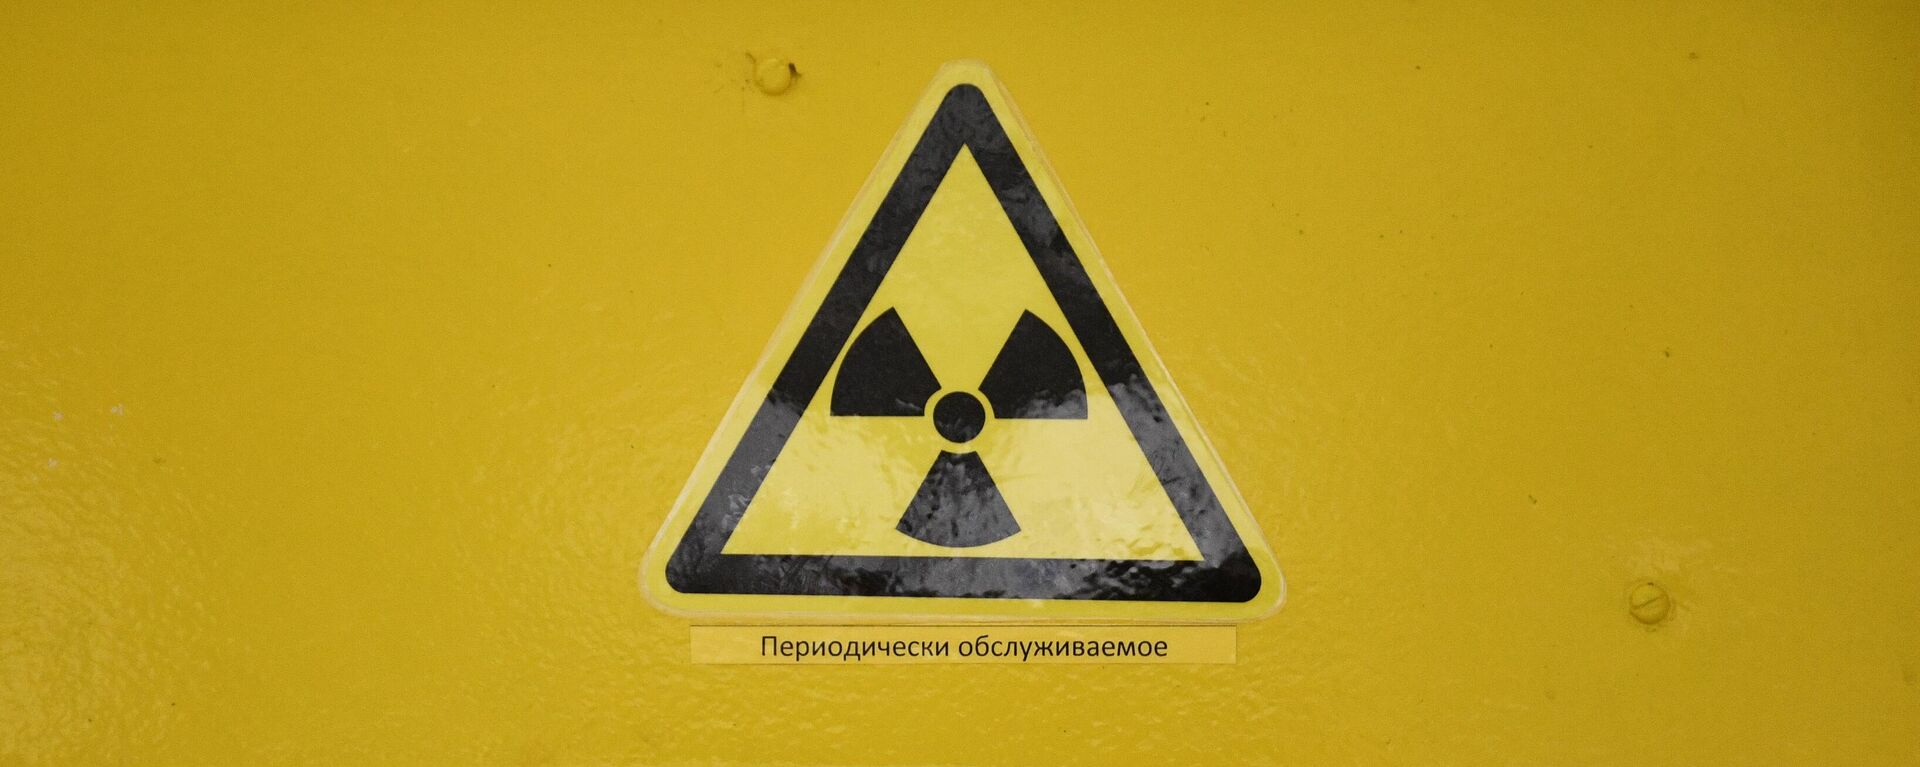 Знак радиационной опасности на двери одного из помещений - Sputnik Тоҷикистон, 1920, 22.02.2022